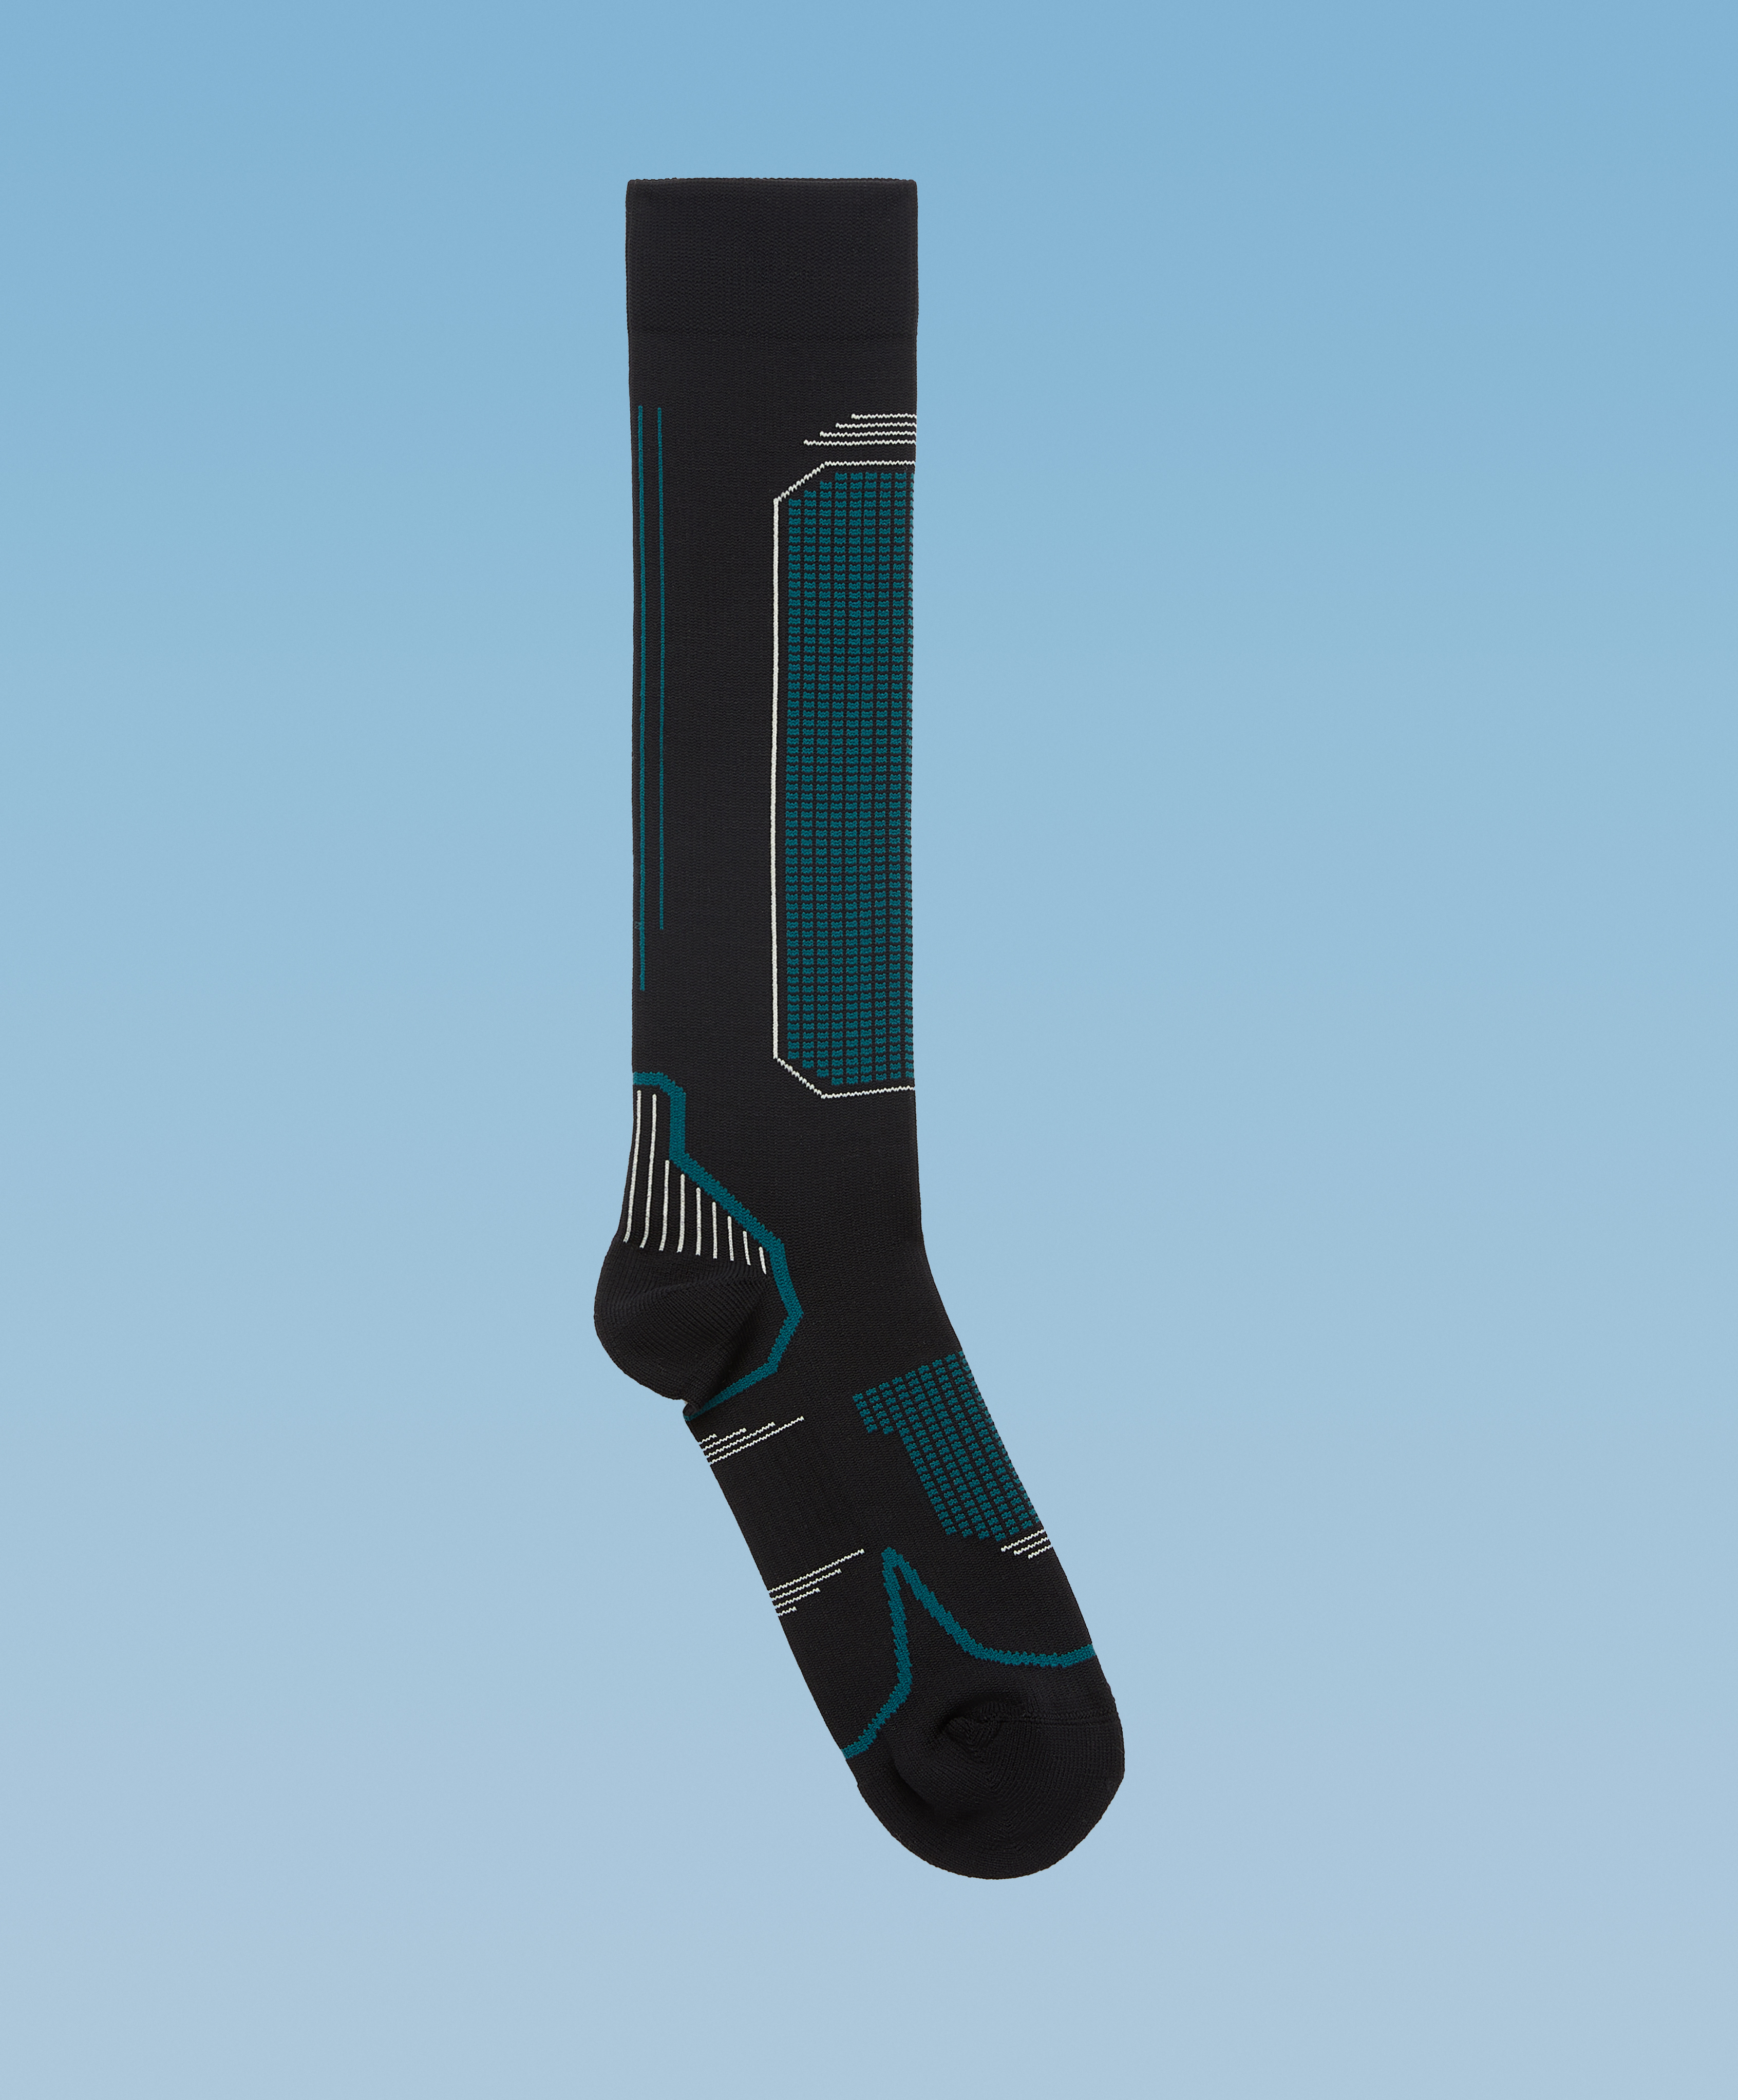 Long ski socks in a microfibre blend